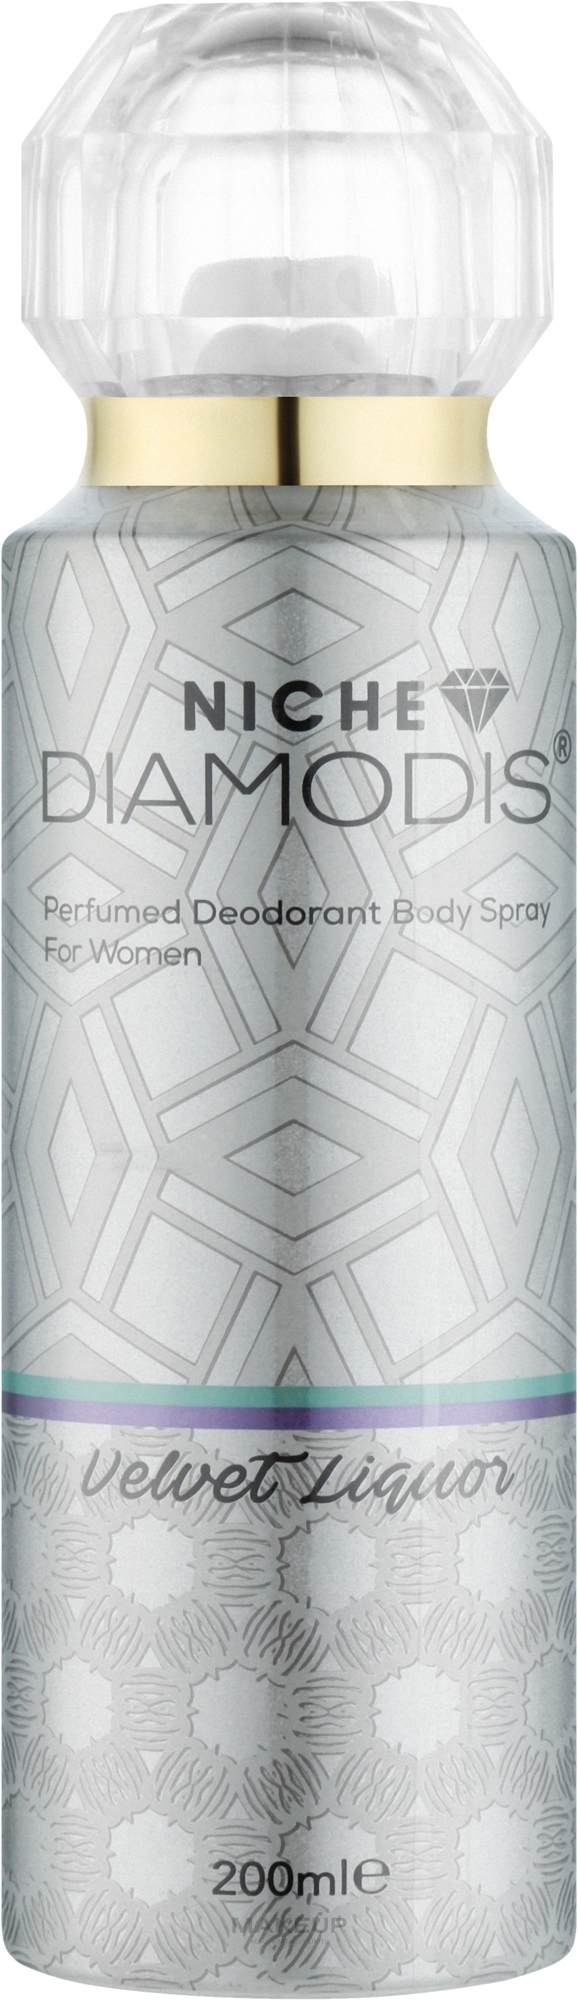 Нішевий дезодорант для тіла - Niche Diamodis Velvet Liquor Perfumed Deodorant Body Spray — фото 200ml